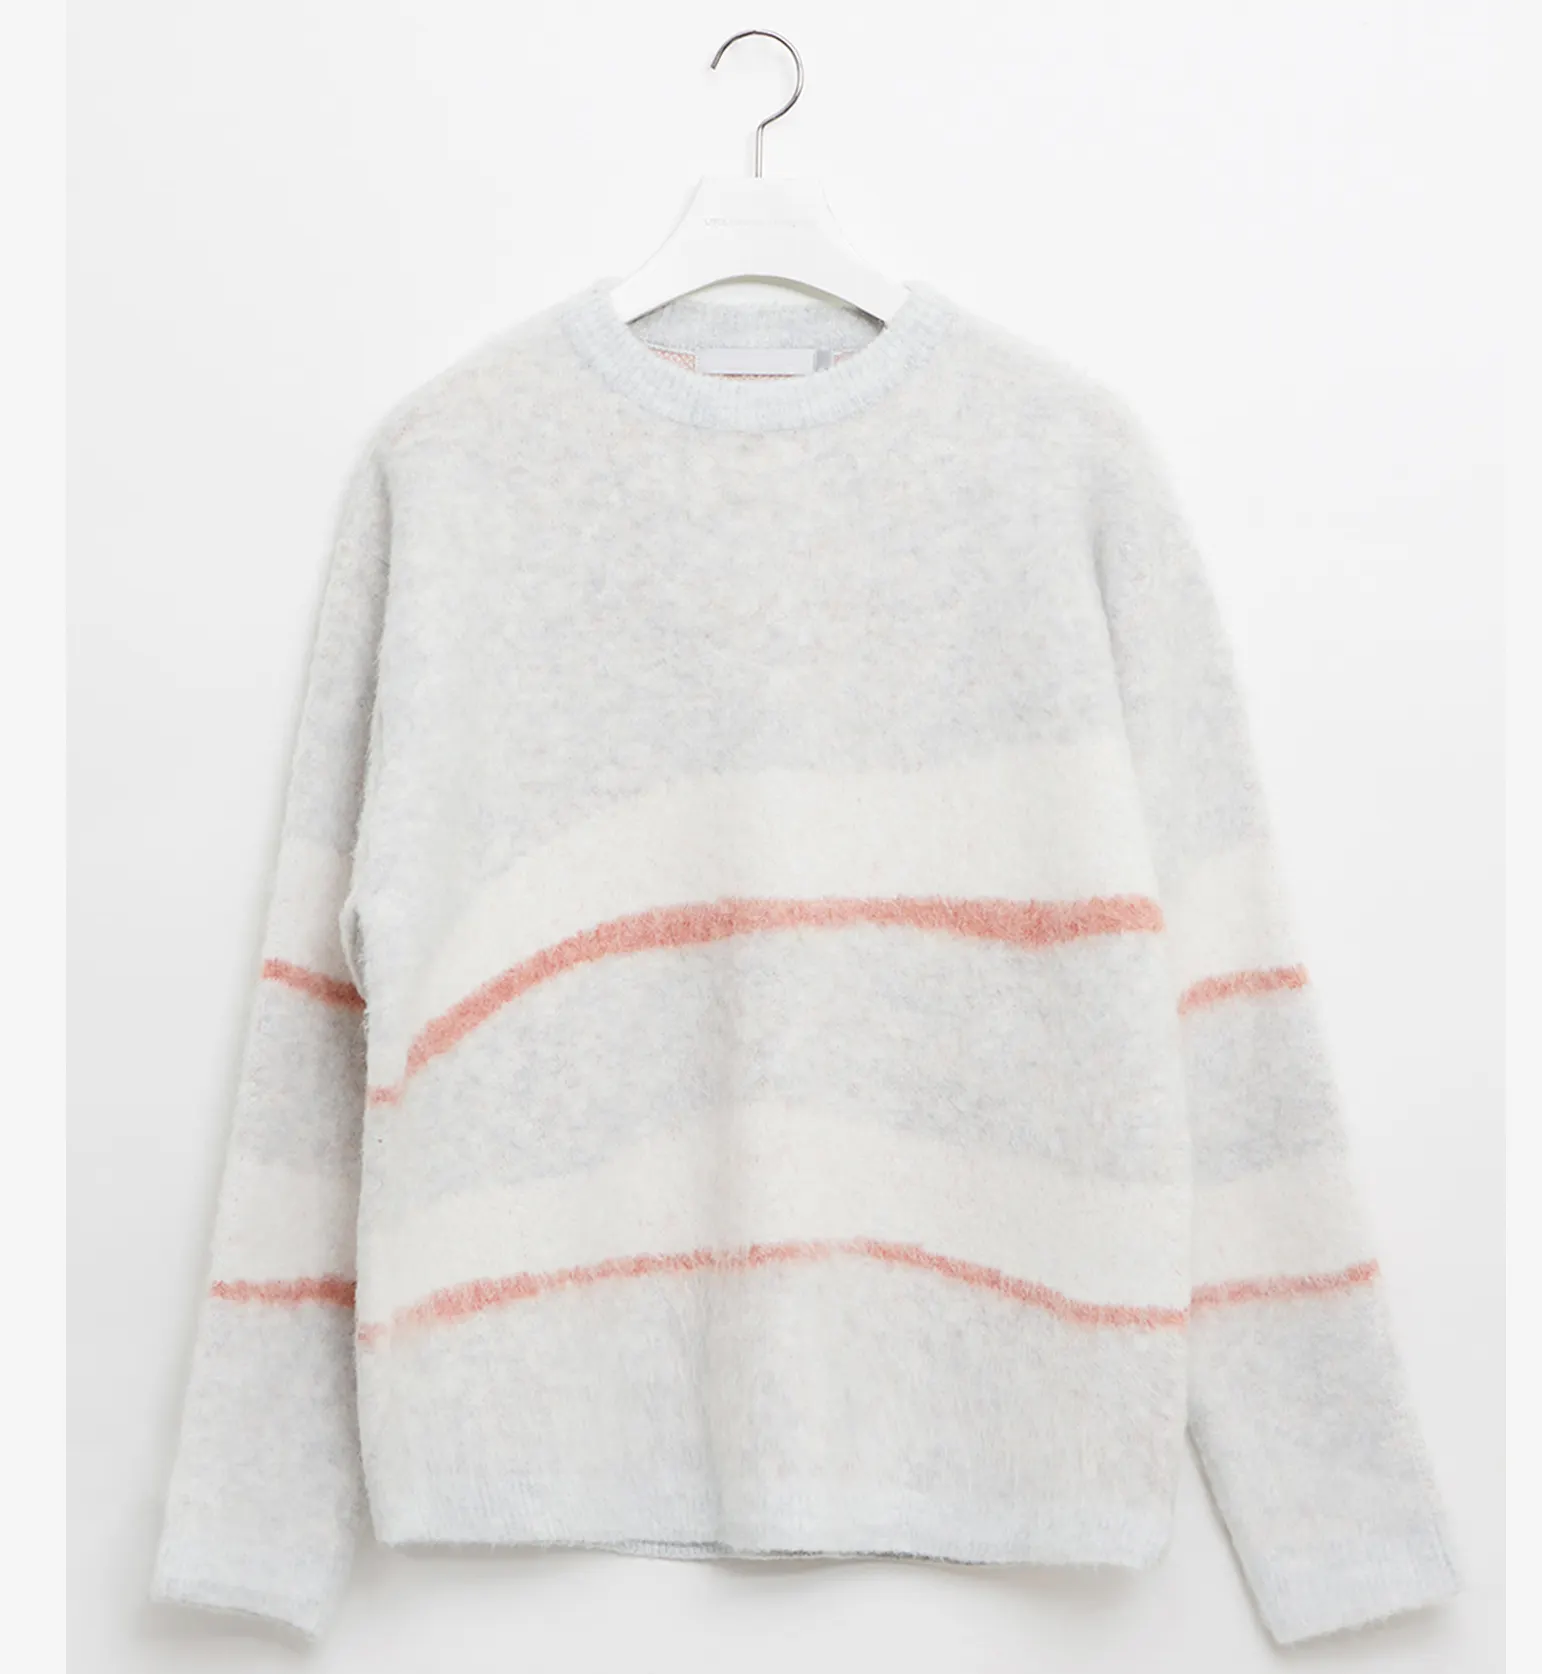 도매 스웨터 패션 캐주얼 순수 코튼 스웨터 Streetwear 패션 느슨한 단색 고민 니트 풀오버 스웨터